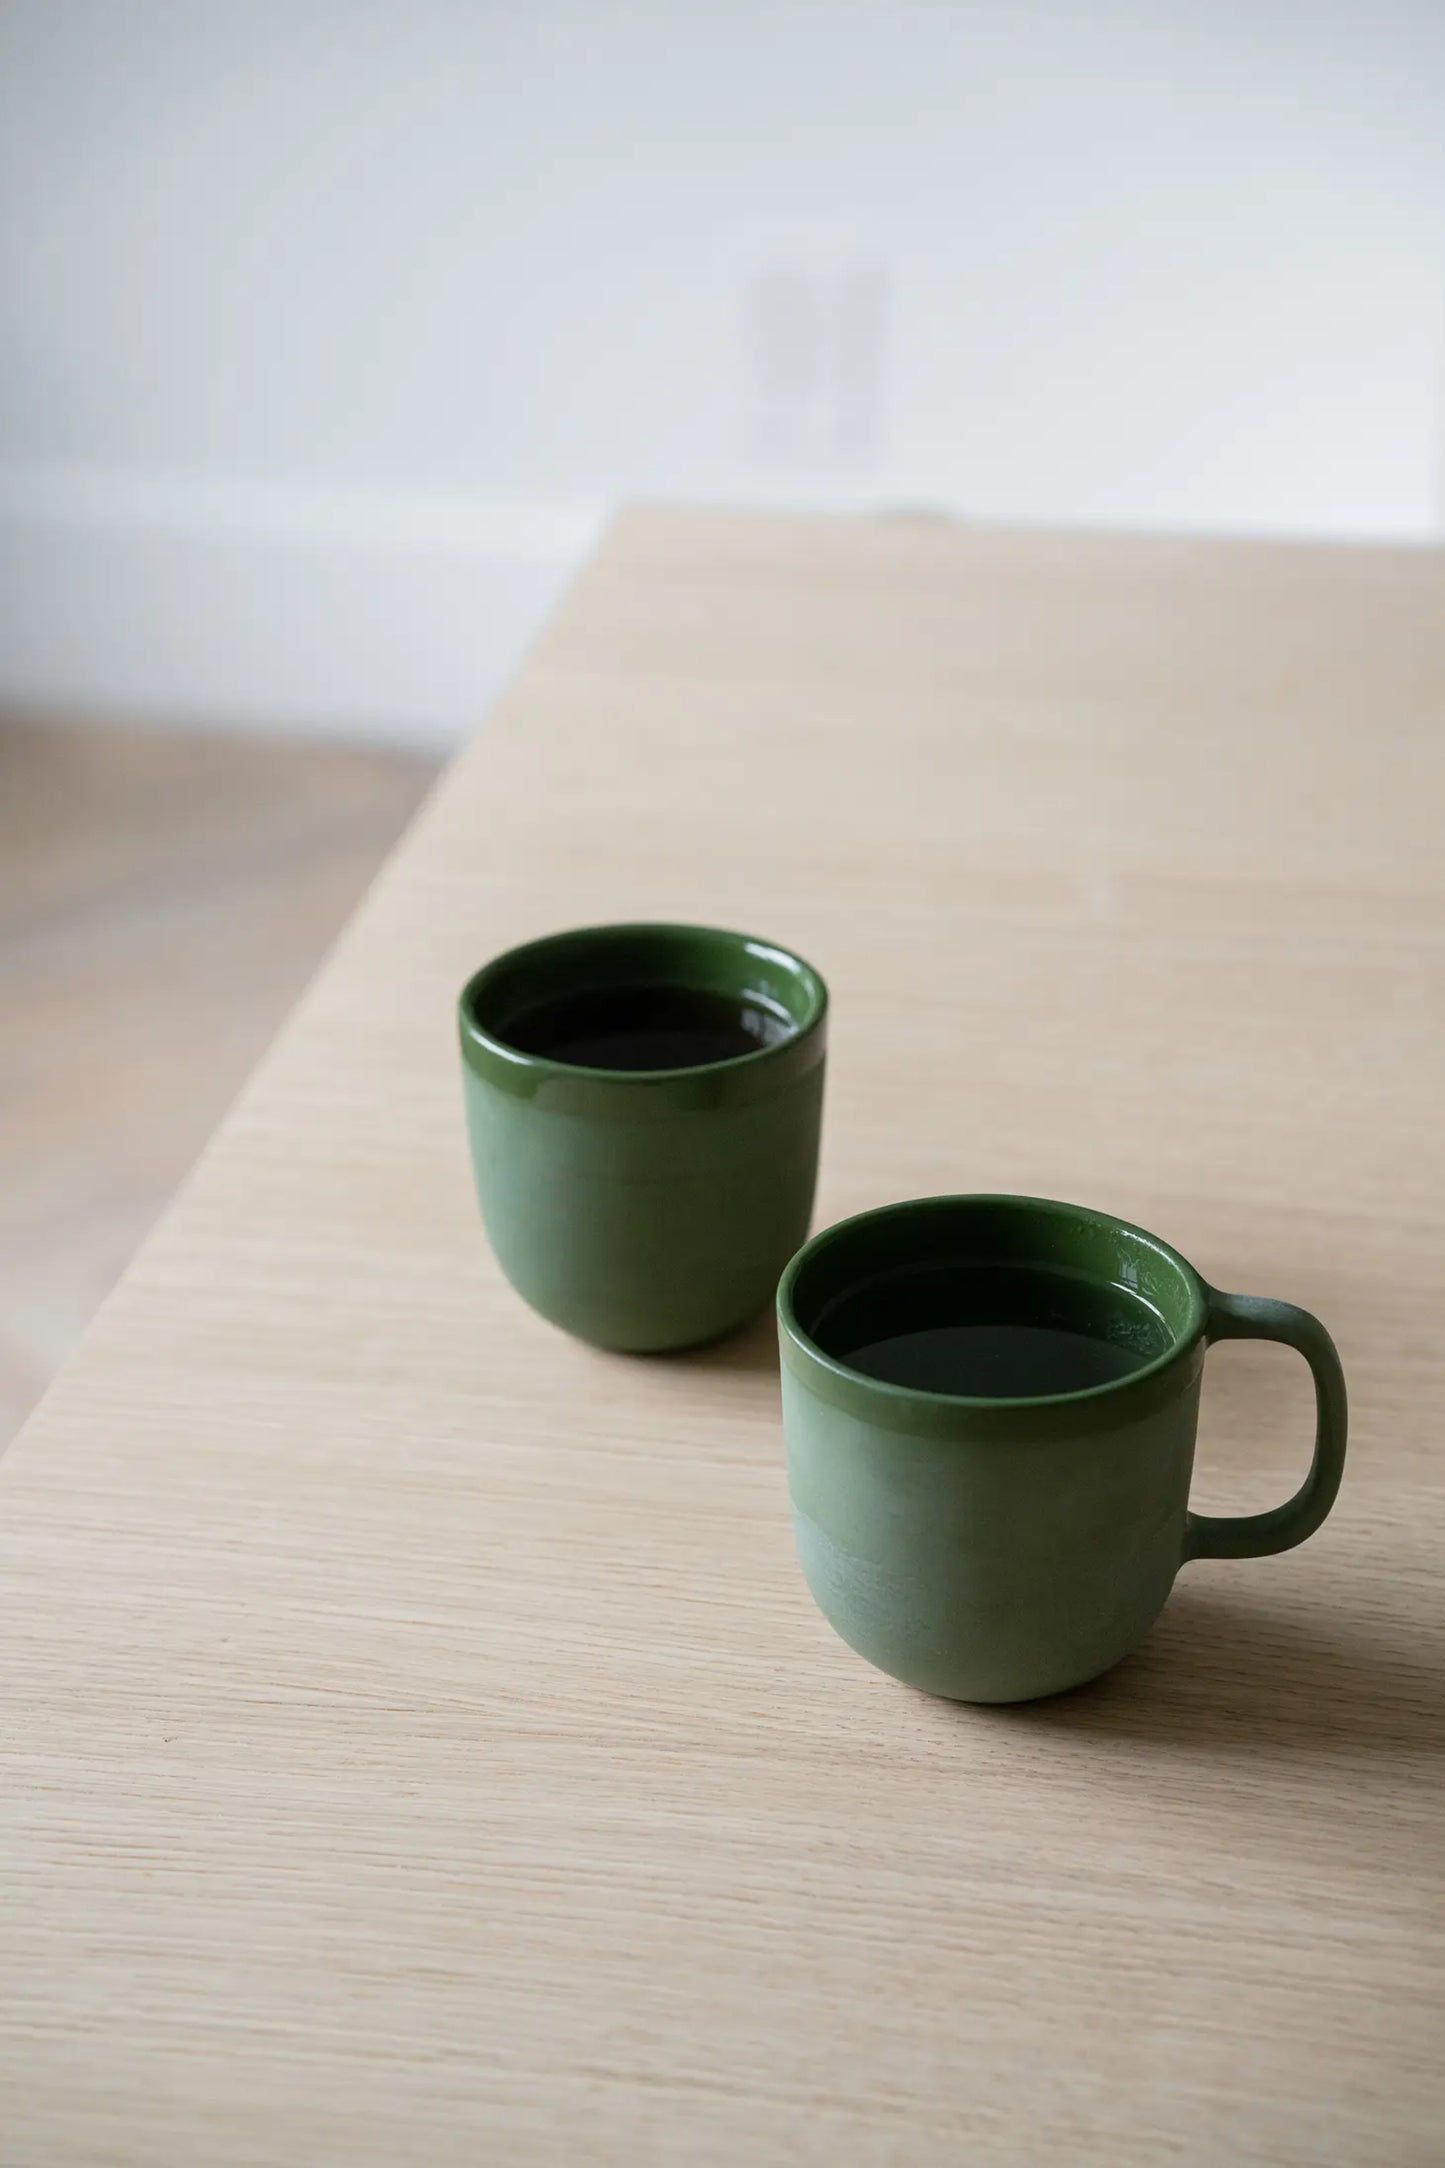 Verdeware Porcelain Cup